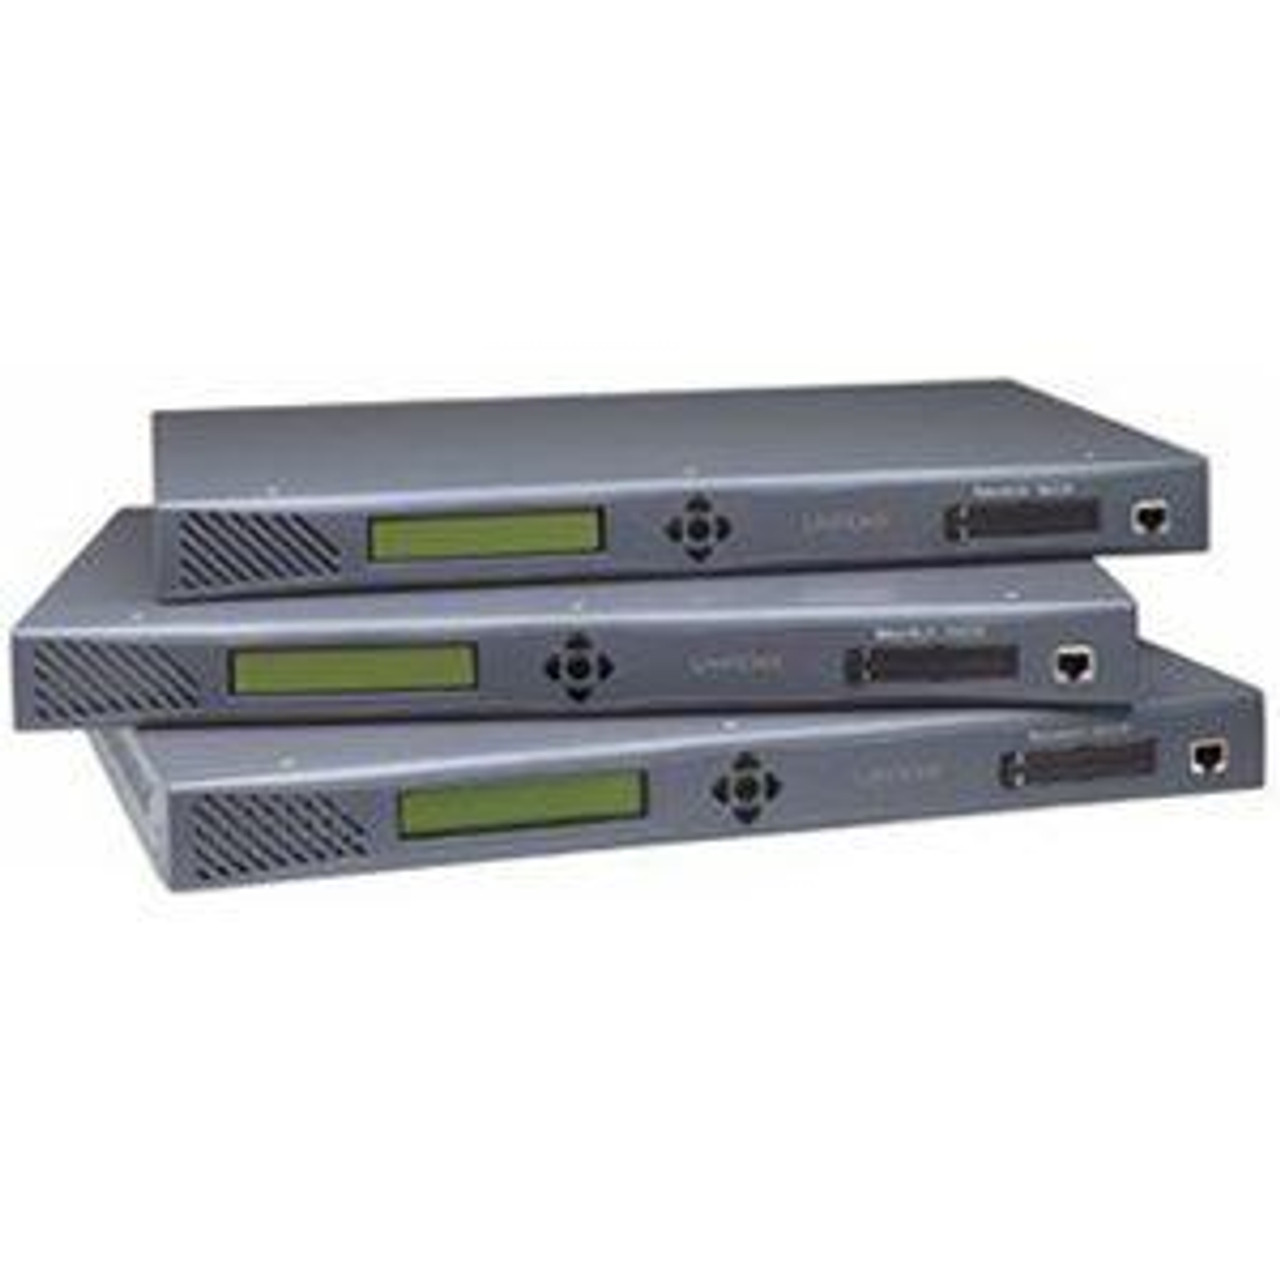 SLC04824T-02 Lantronix 48pt Dual Dc Supp Secure Console Mgr Rohs